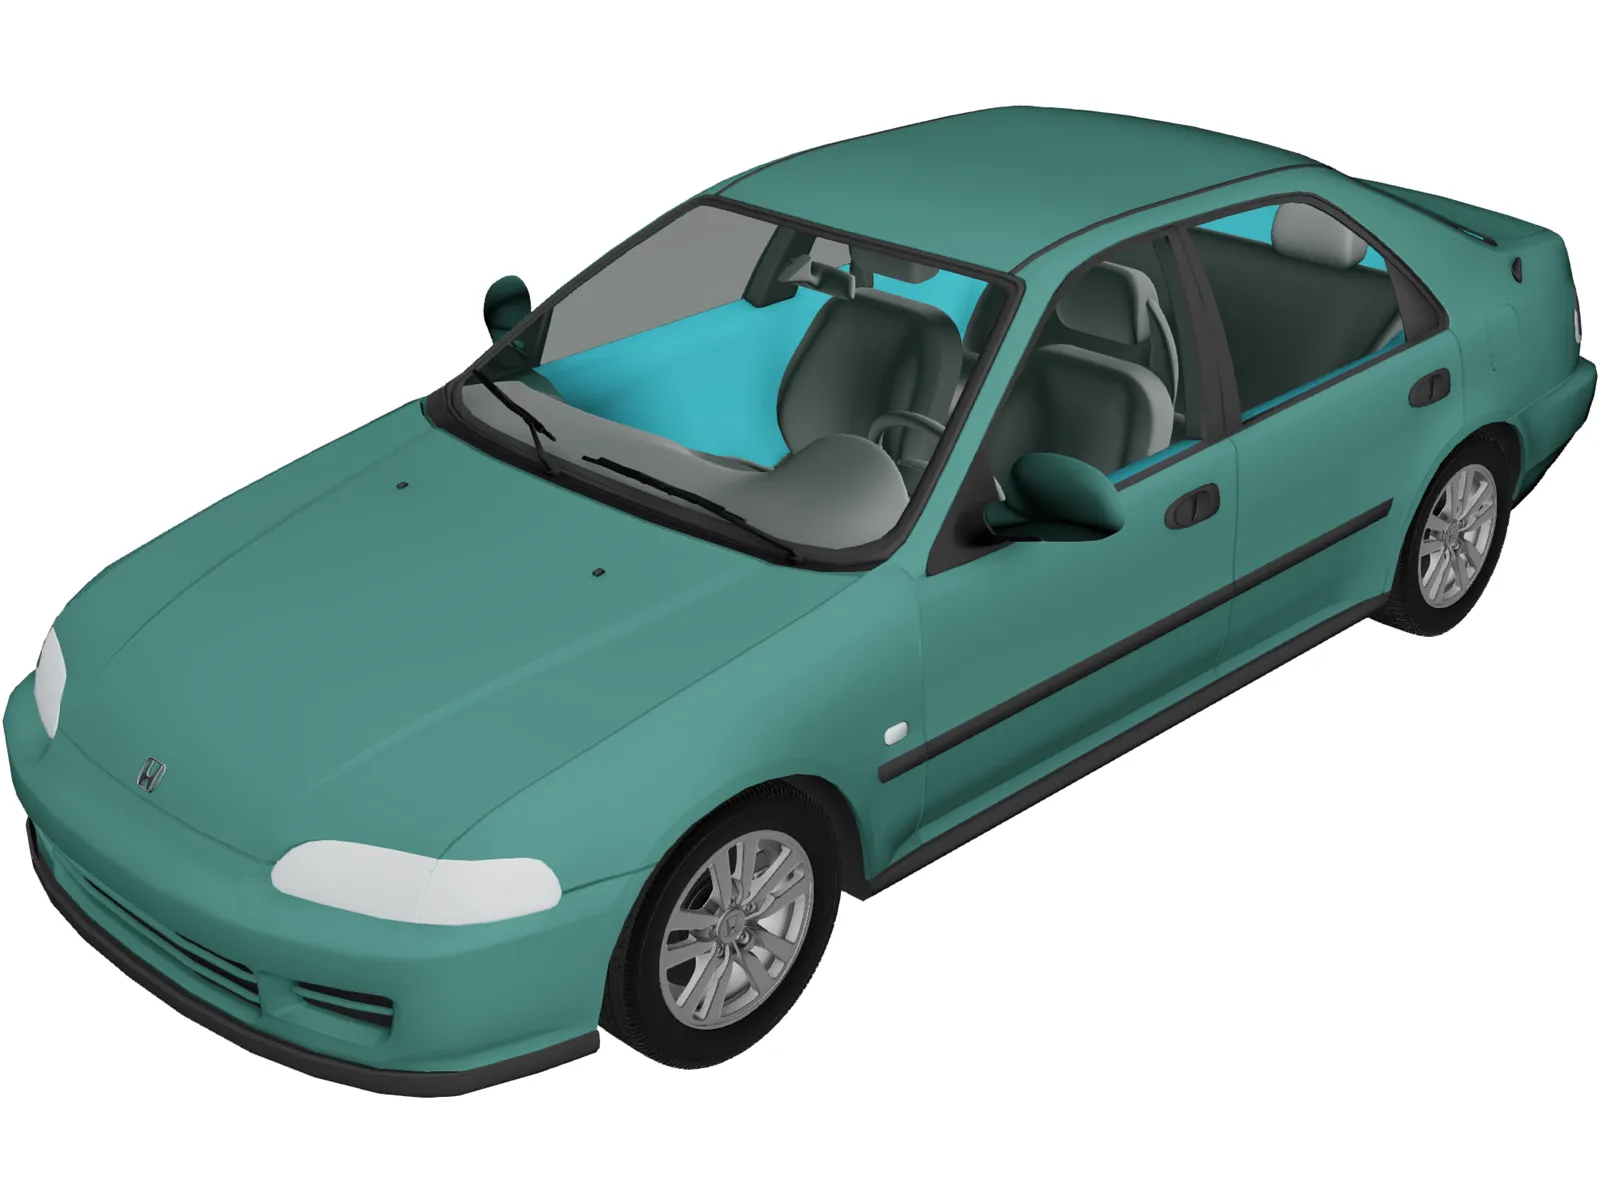 Honda Civic EG Sedan (1993) 3D Model